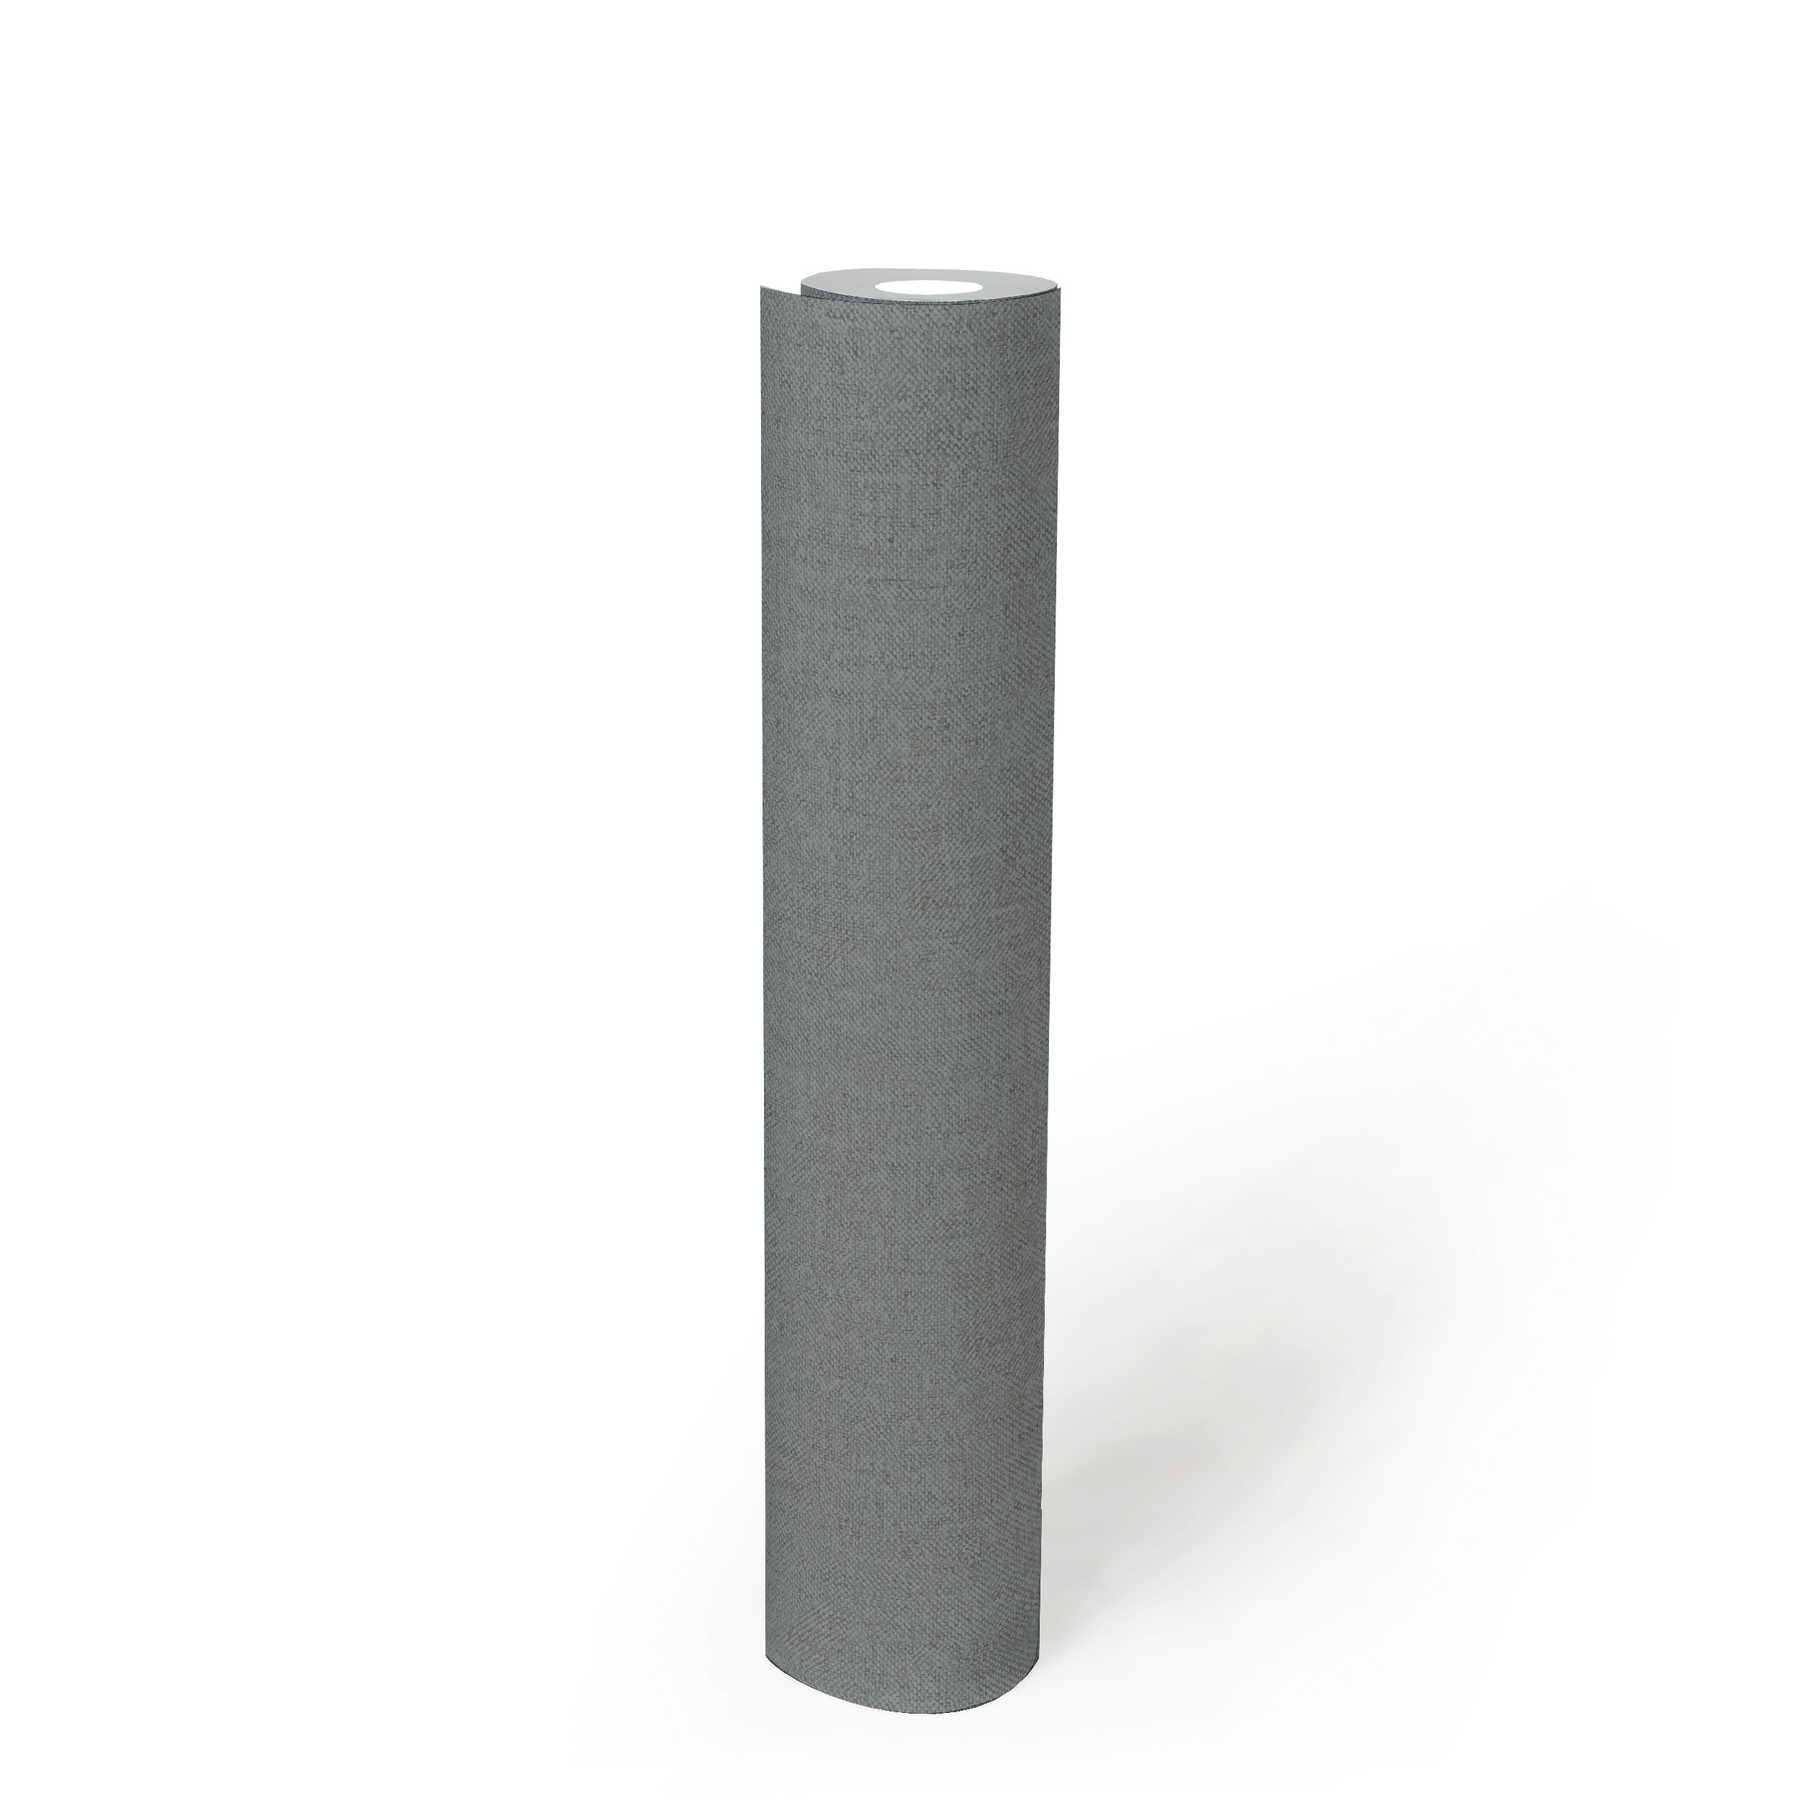             Textiel-look behang grijs loden met structuurpatroon
        